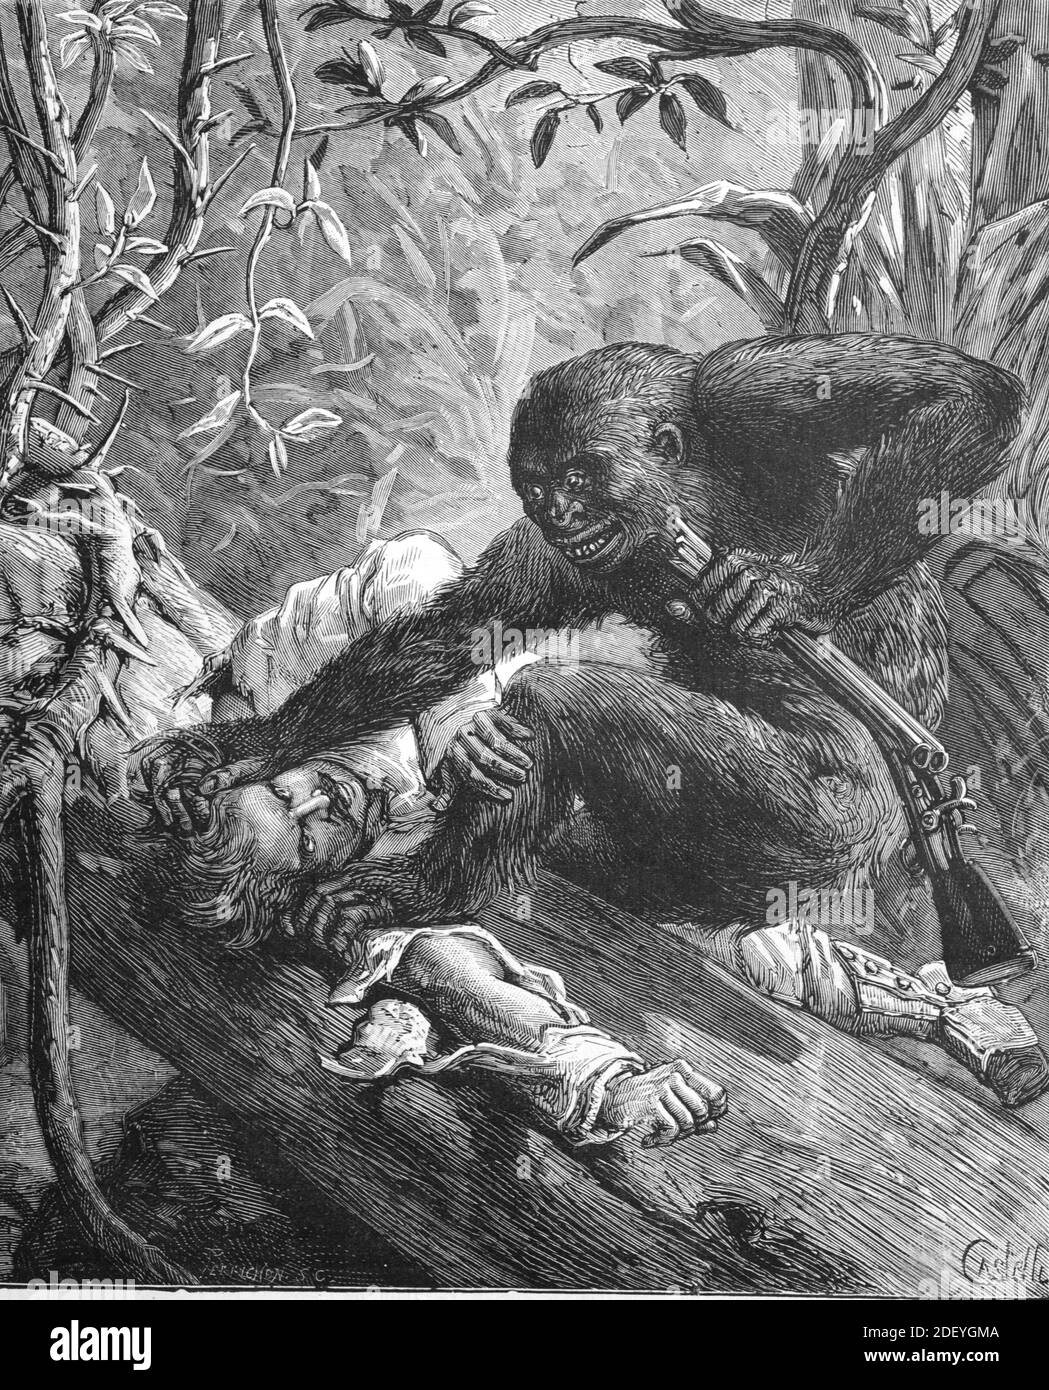 Gorilla greift Gewehr oder Gewehr von Big Game Hunter im Kongo Regenwald Afrika (engr. Castelli 1884) Vintage Illustration oder Gravur Stockfoto